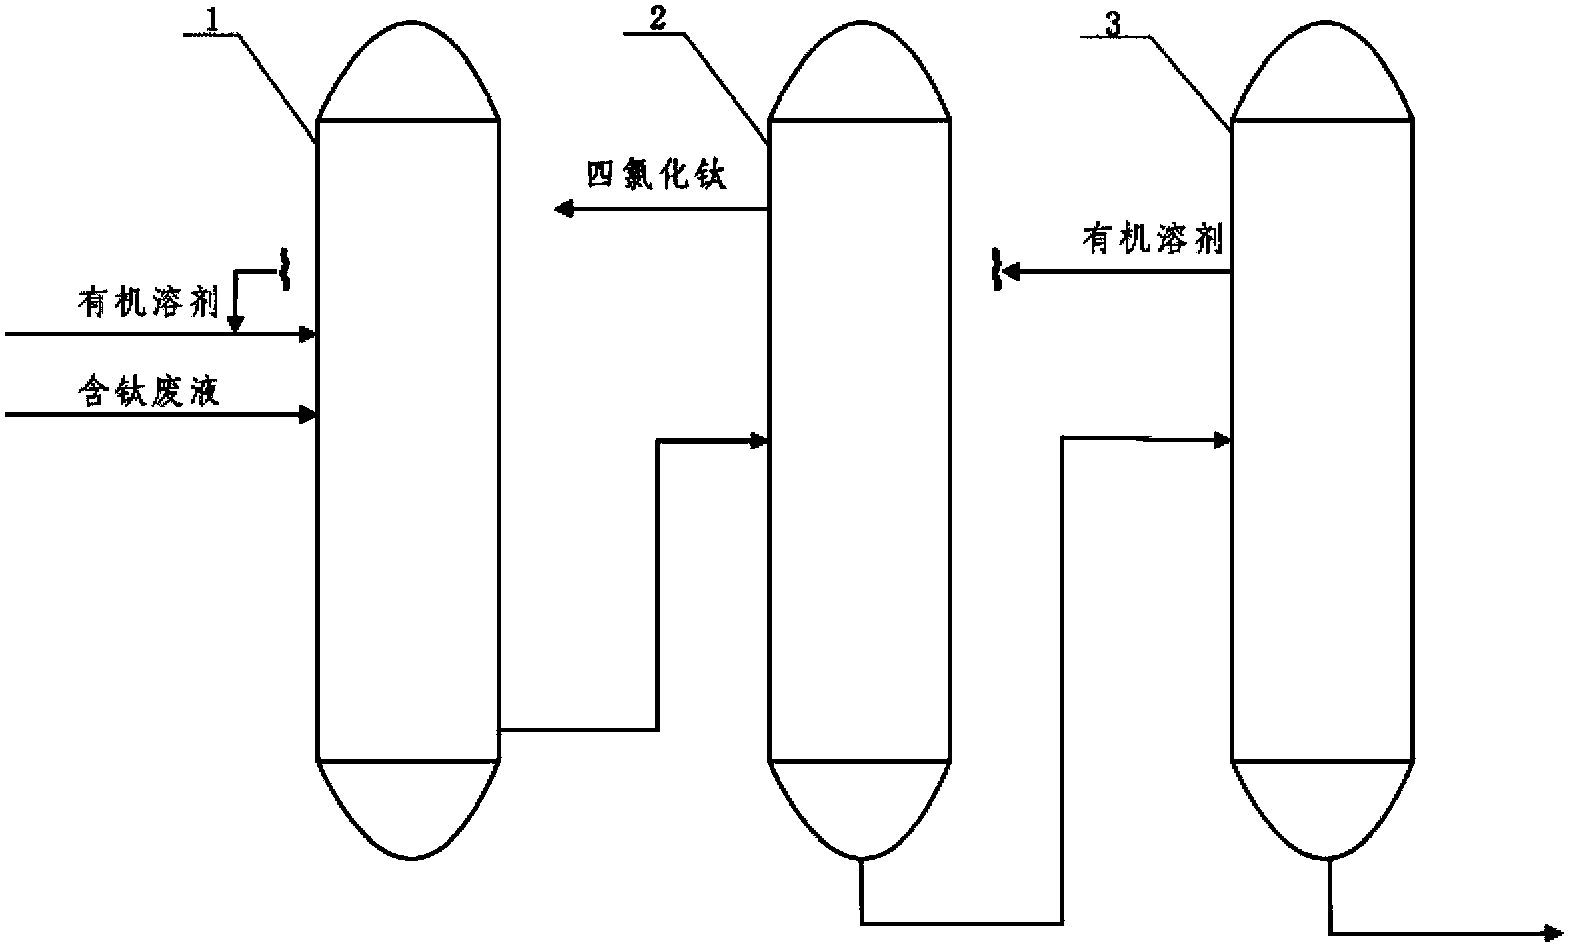 Recovery processing method of titanium-containing waste liquid